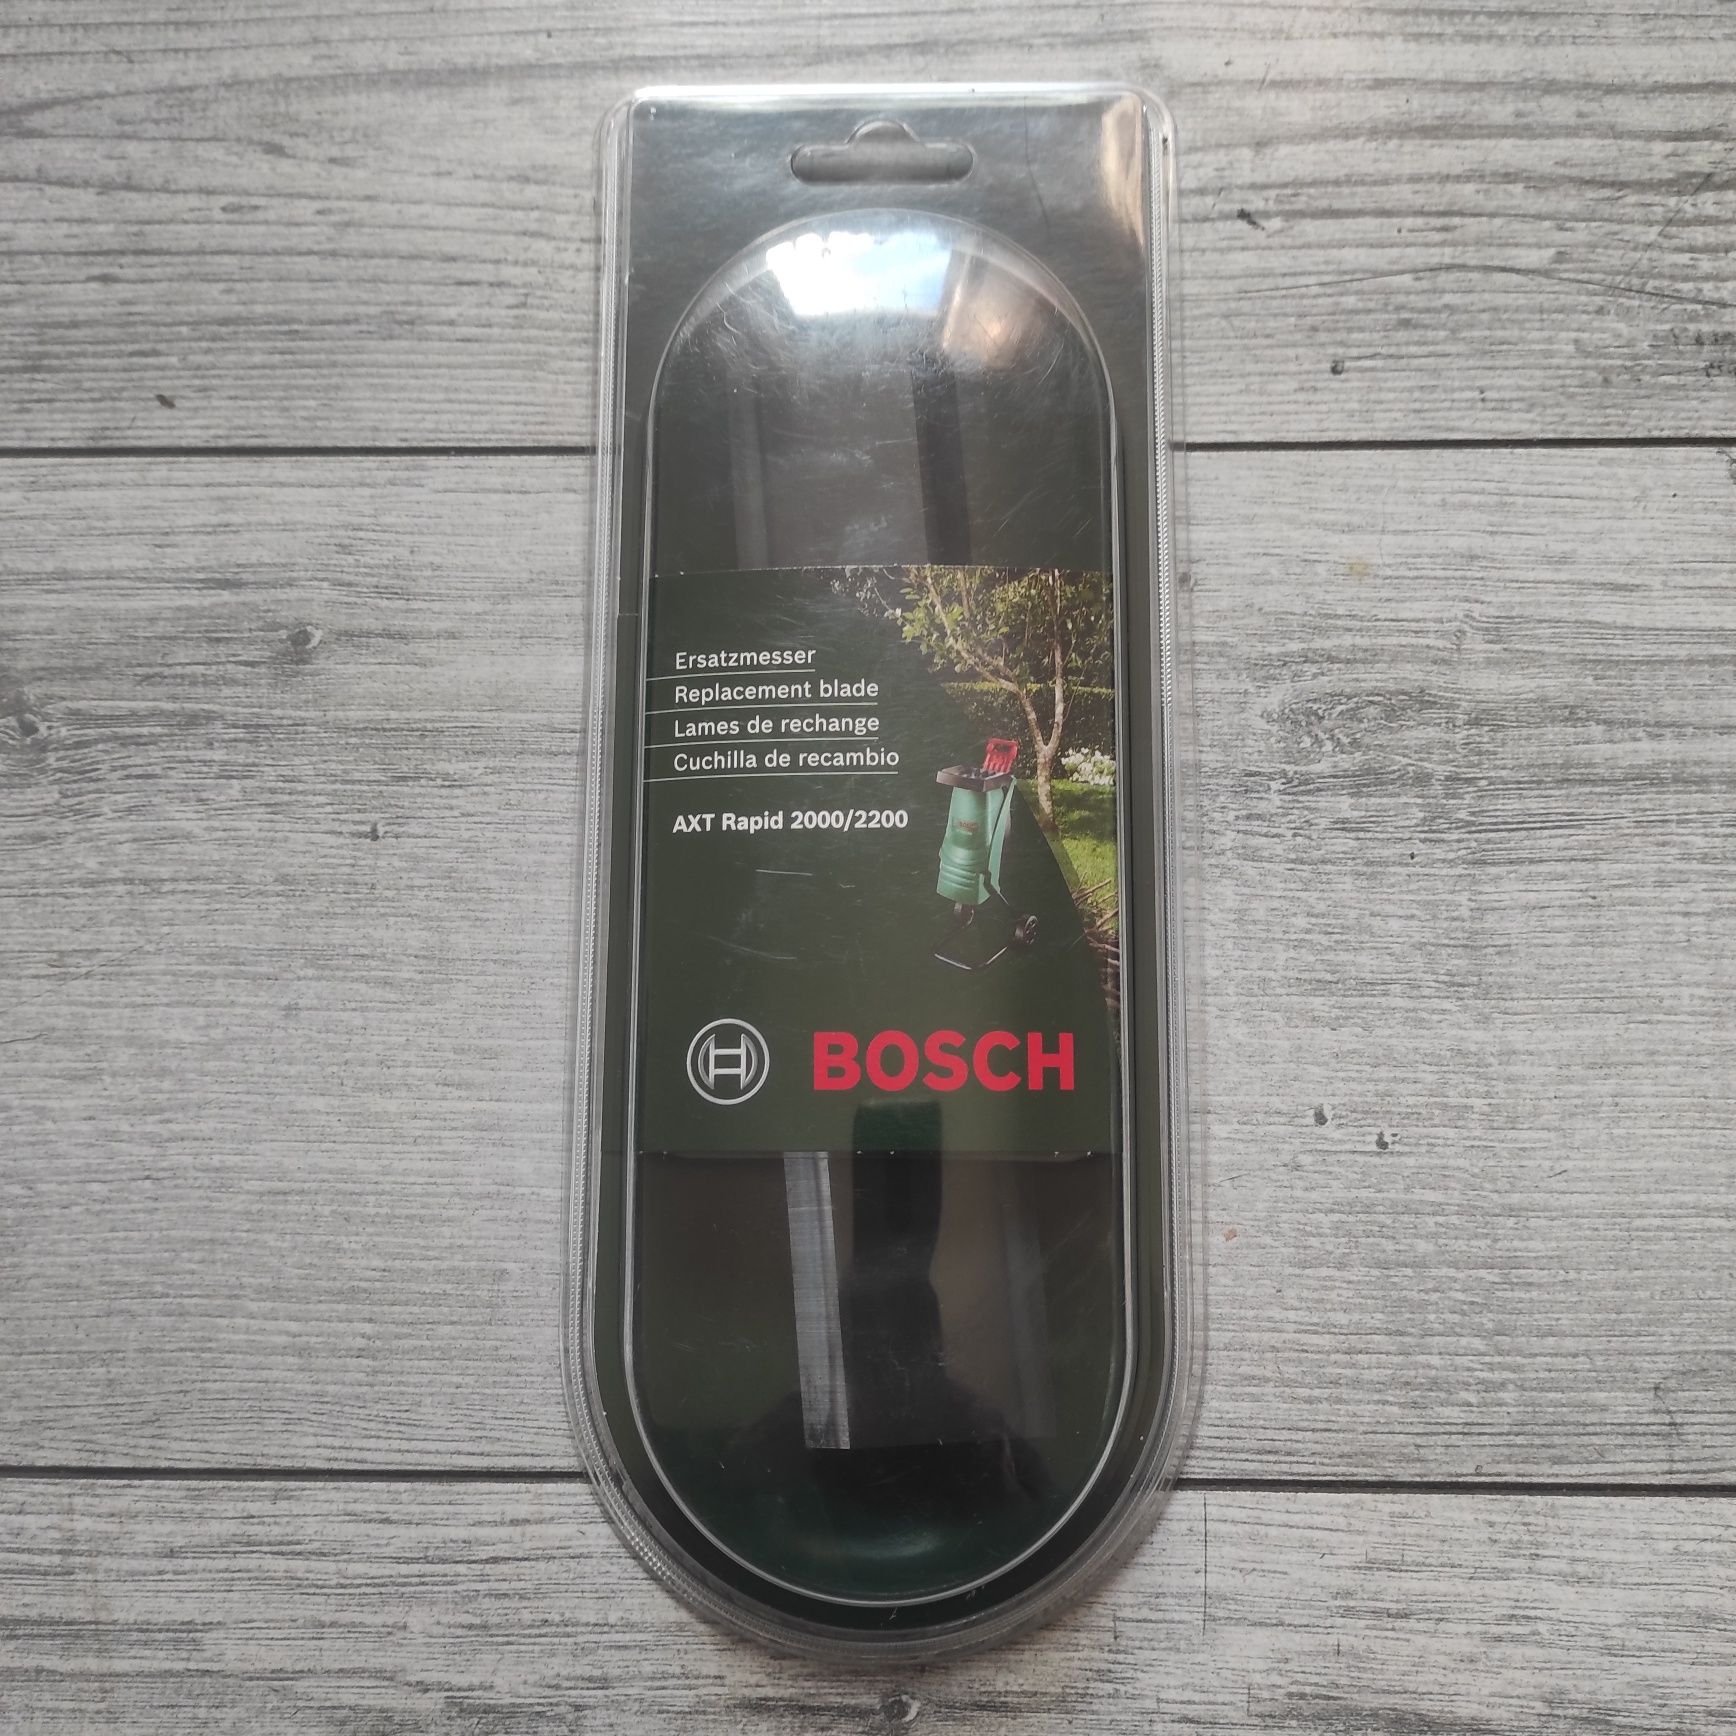 Nóż Bosch AXT Rapid 2000/2200